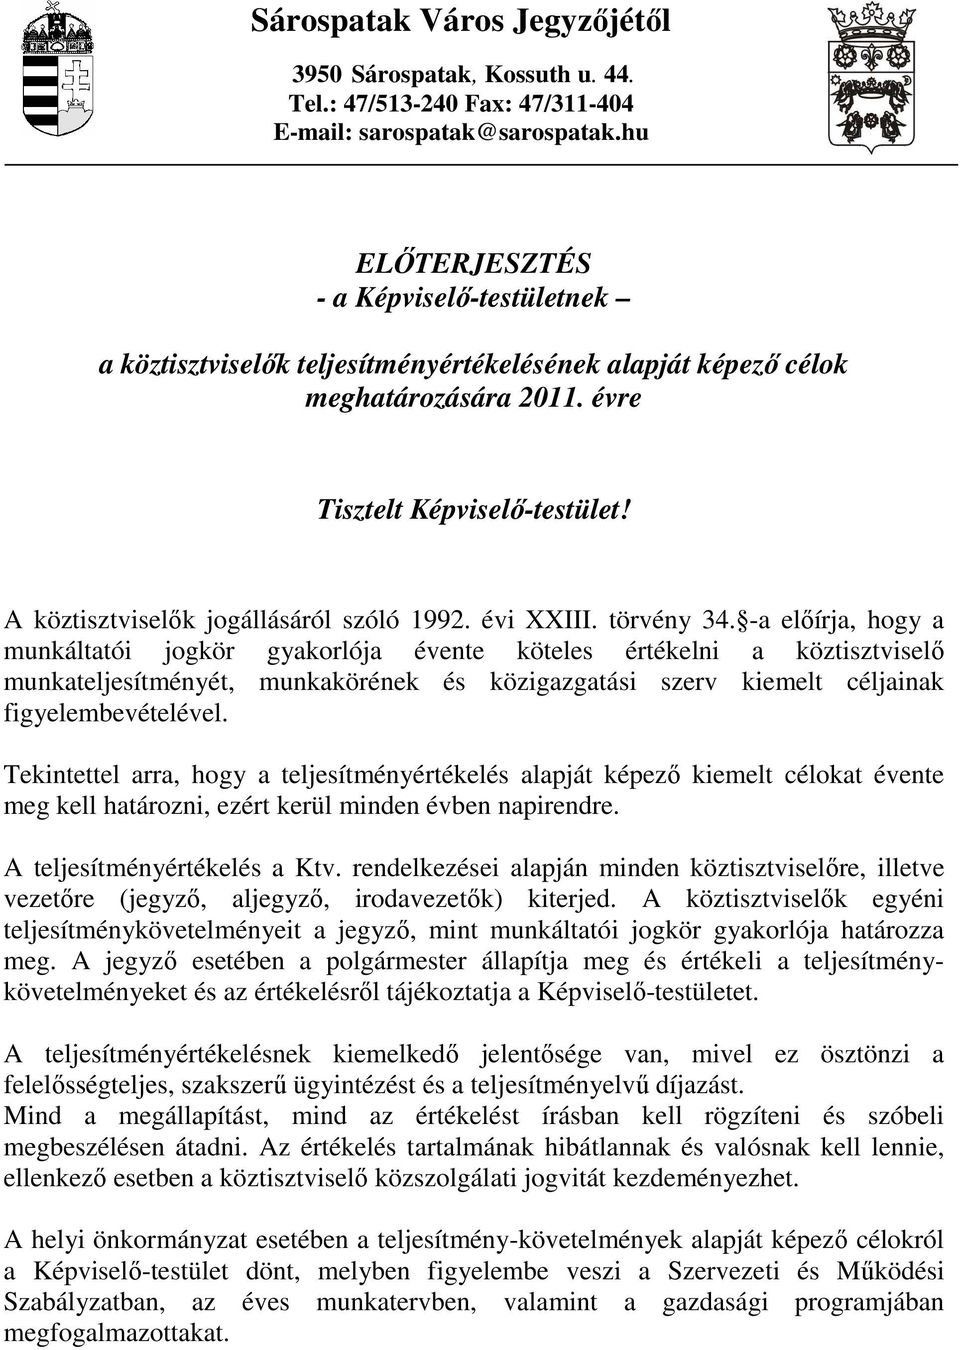 A köztisztviselık jogállásáról szóló 1992. évi XXIII. törvény 34.